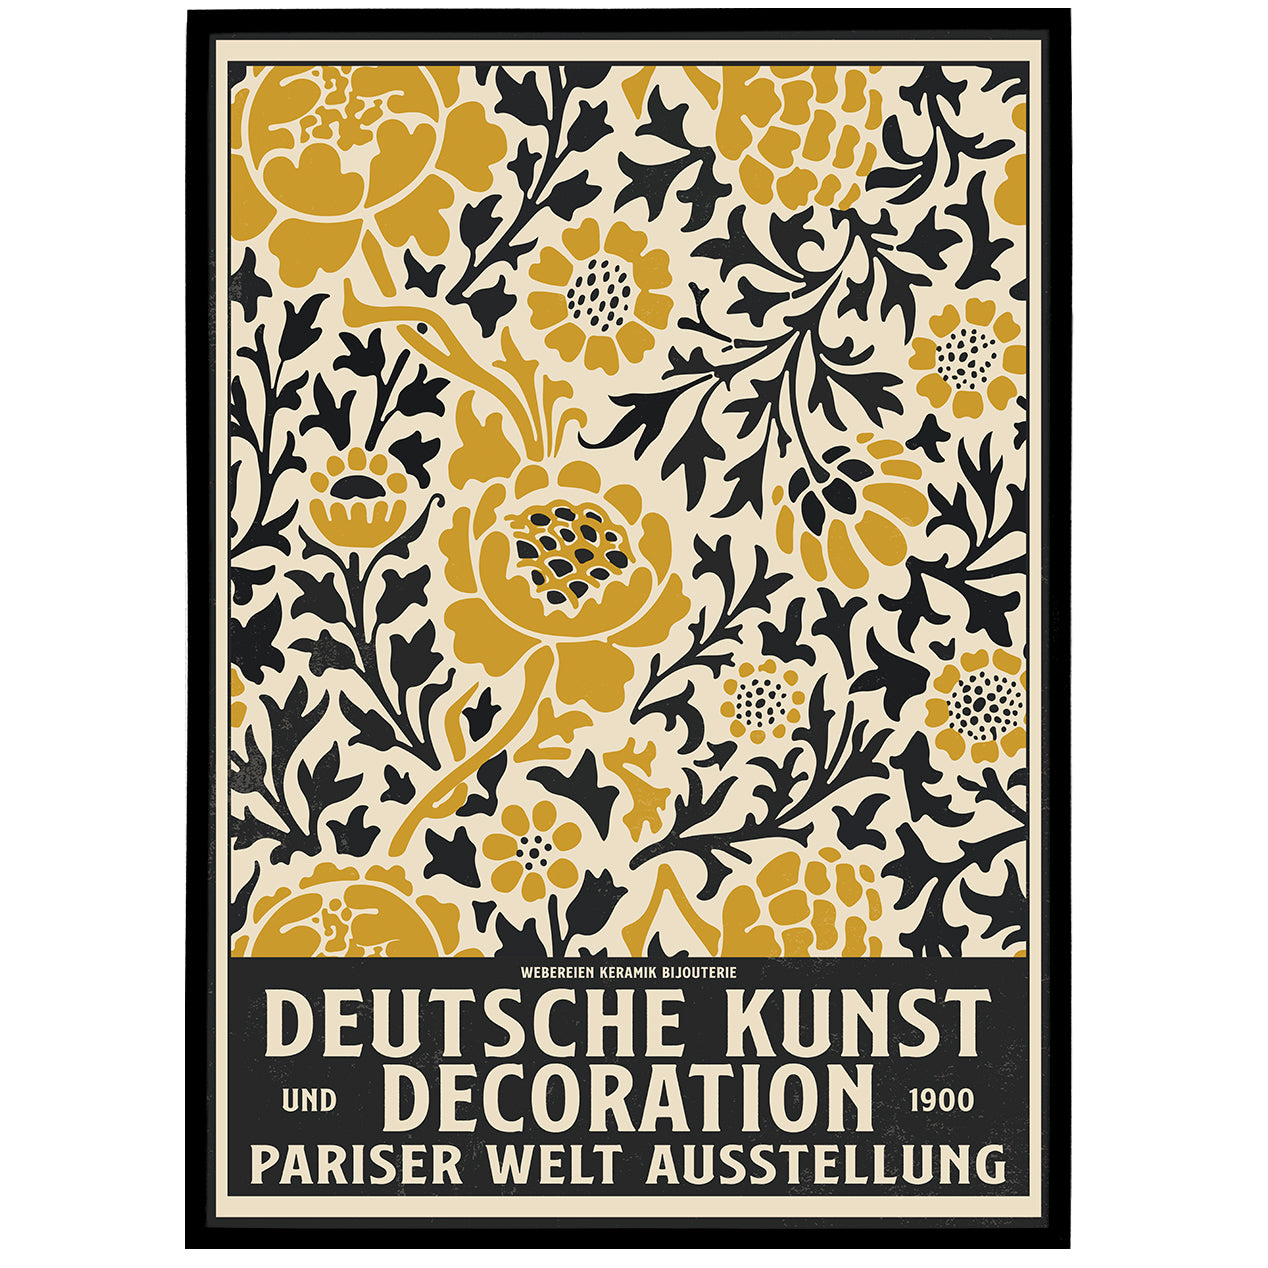 Deutsche Kunst und Decoration Poster